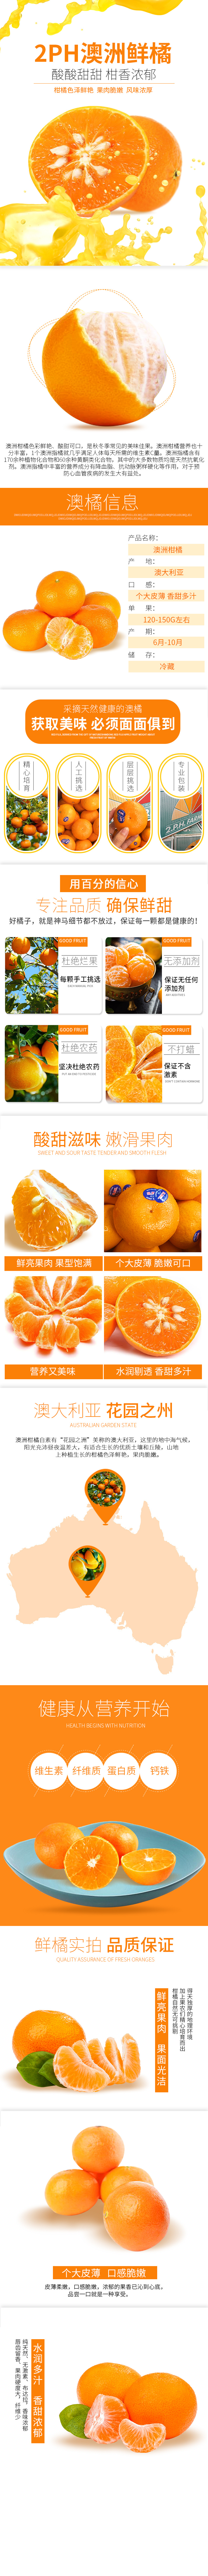 淘宝美工谷雨澳洲新鲜橘子详情页作品